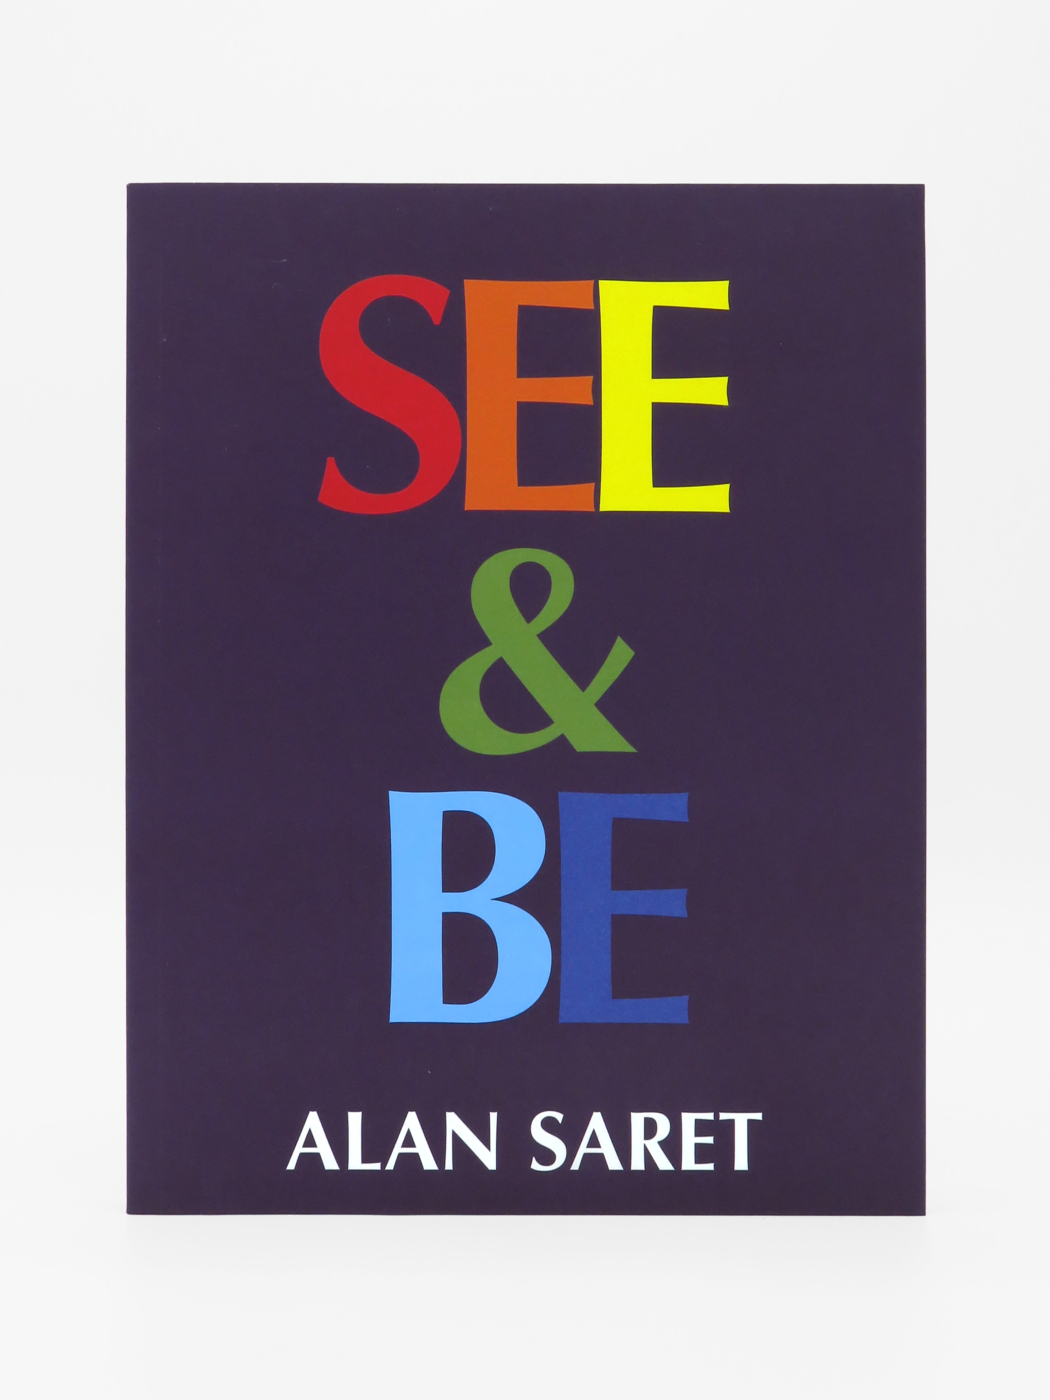 Alan Saret, See & Be